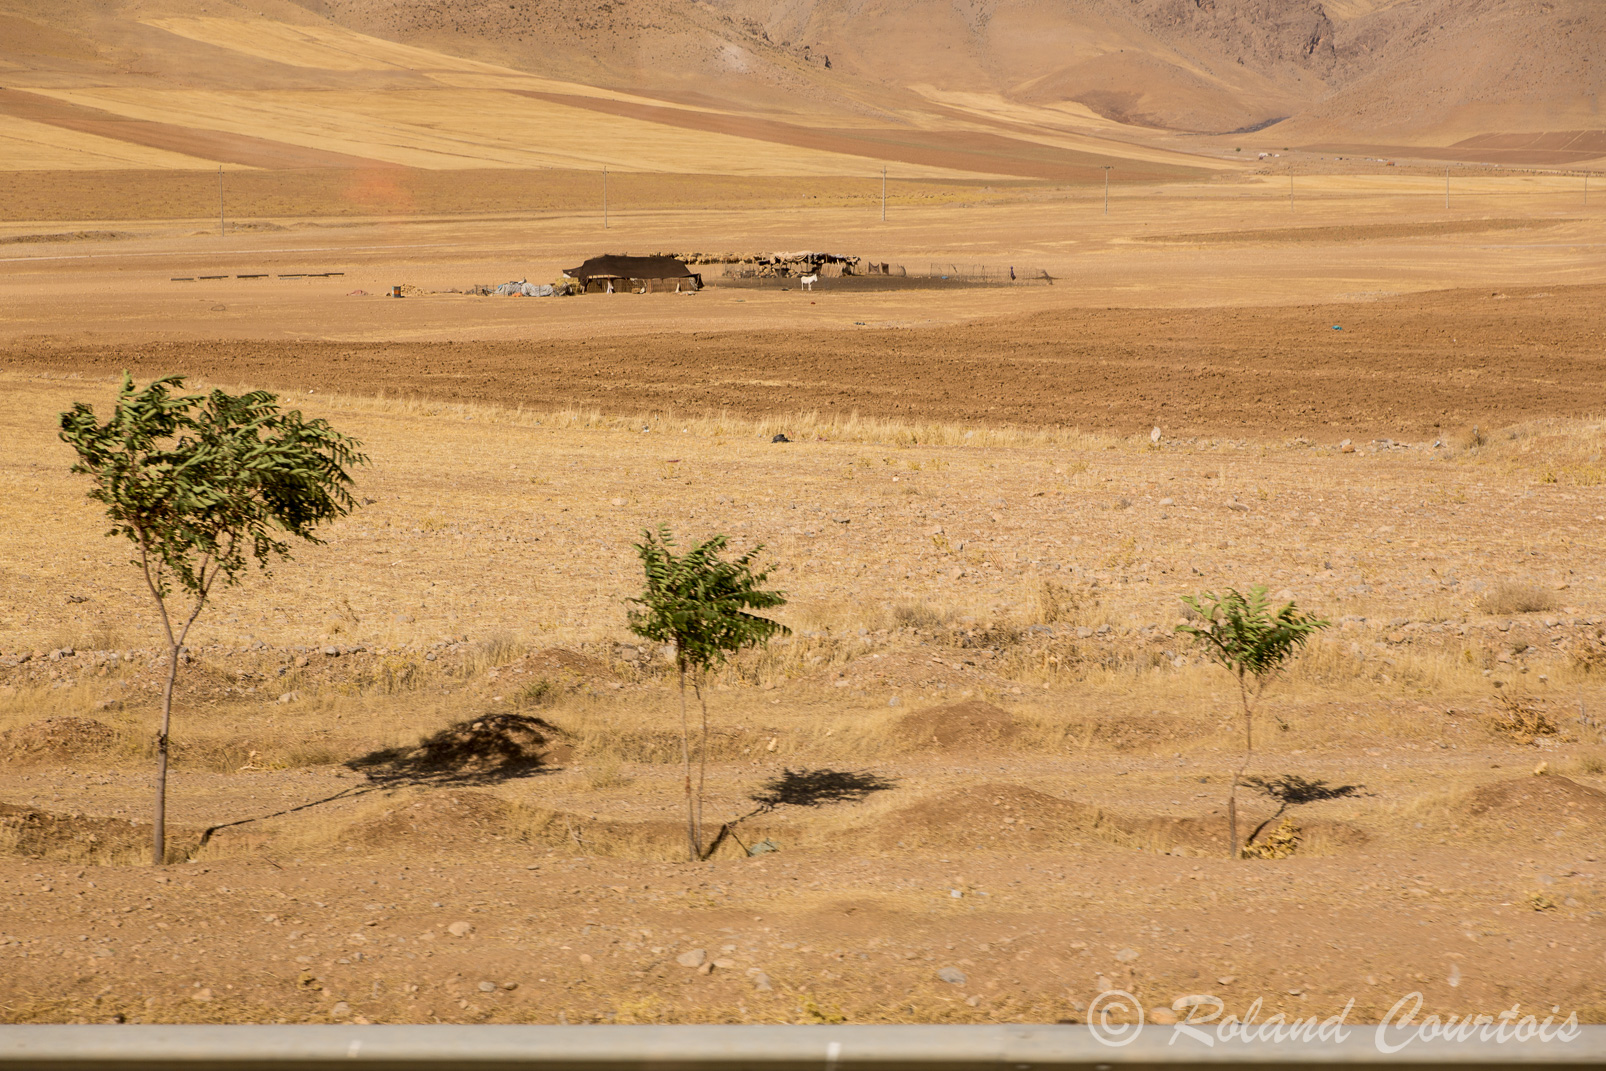 Paysages arides de la région d'Hamedan à environ 1500 m. d'altitude.